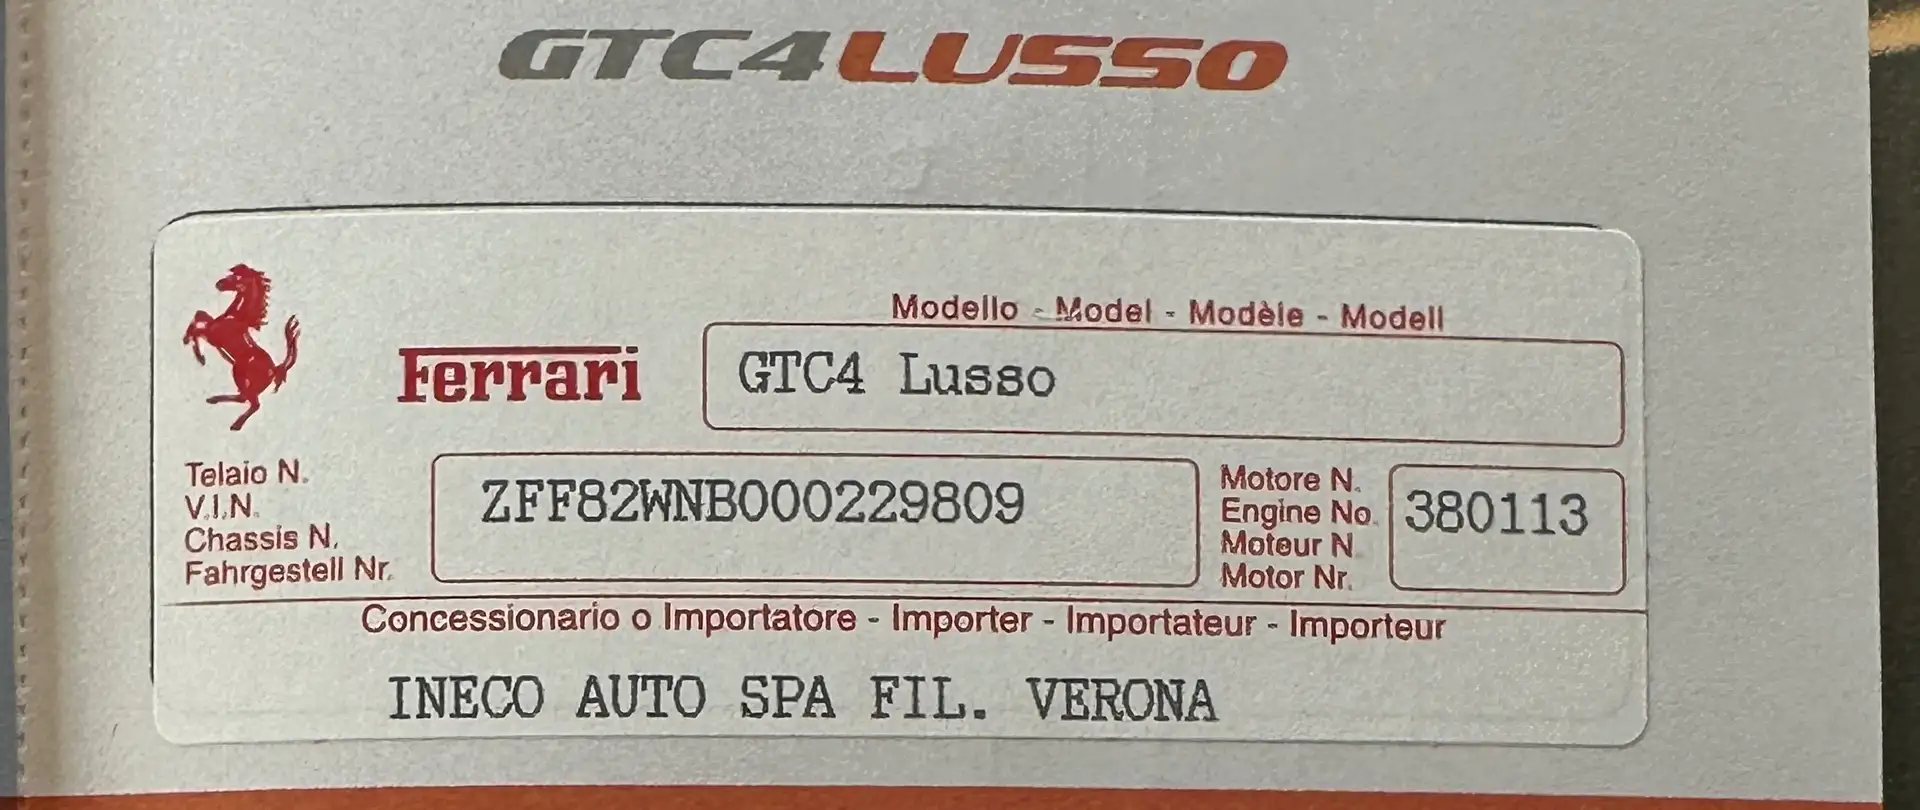 Ferrari GTC4 Lusso V12 - LEGGERE DESCRIZIONE - CERTIFICATA 100% Grey - 1